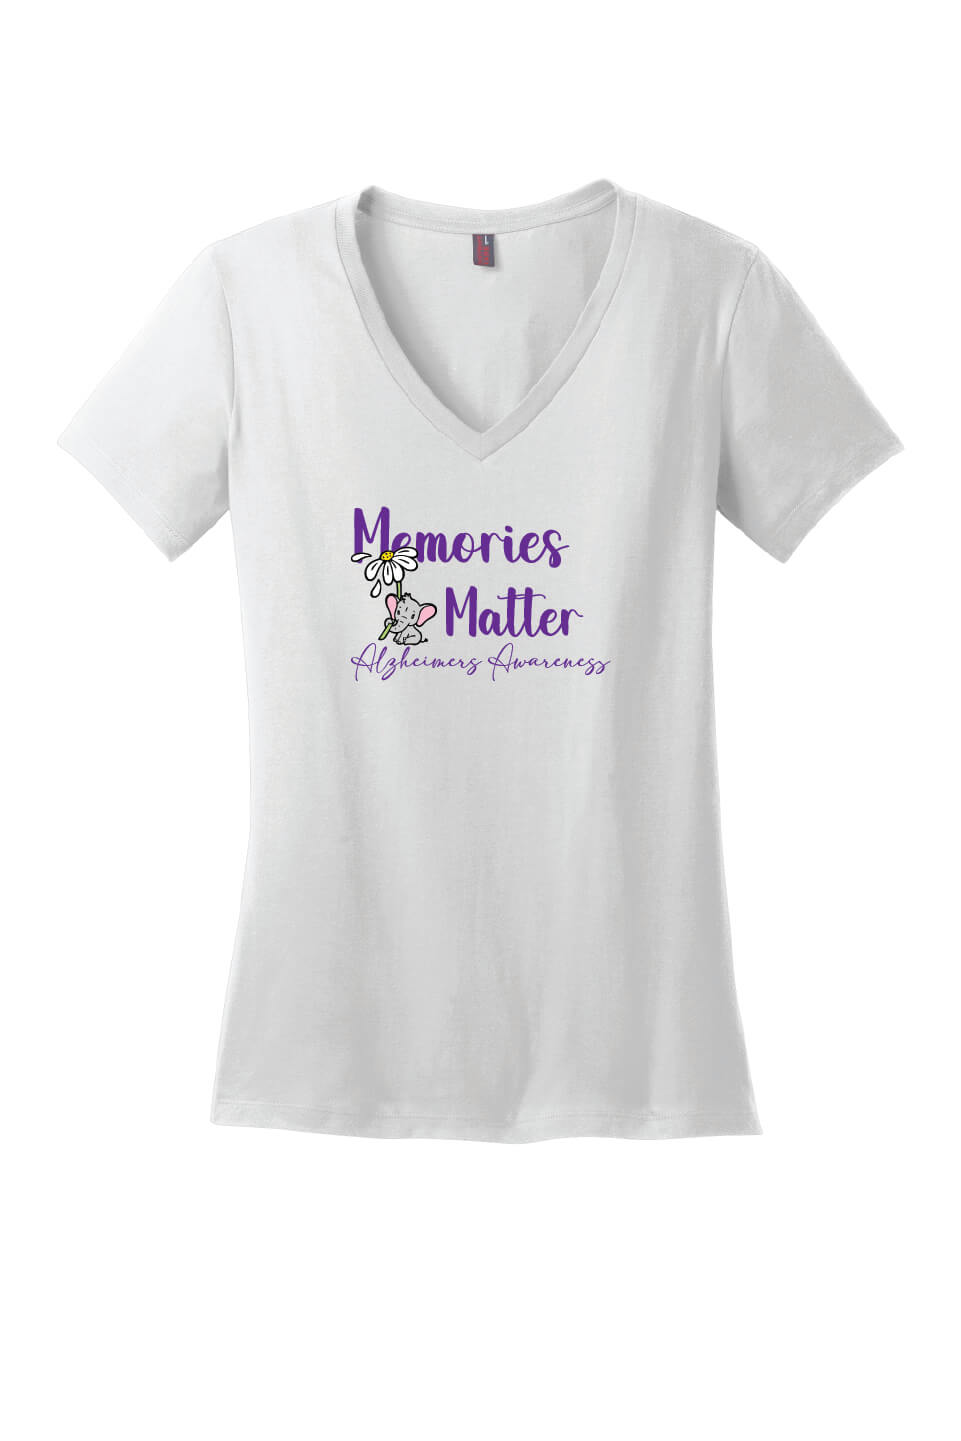 Memories Matter - Alzheimers Awareness Ladies V-Neck Short Sleeve T-Shirt white